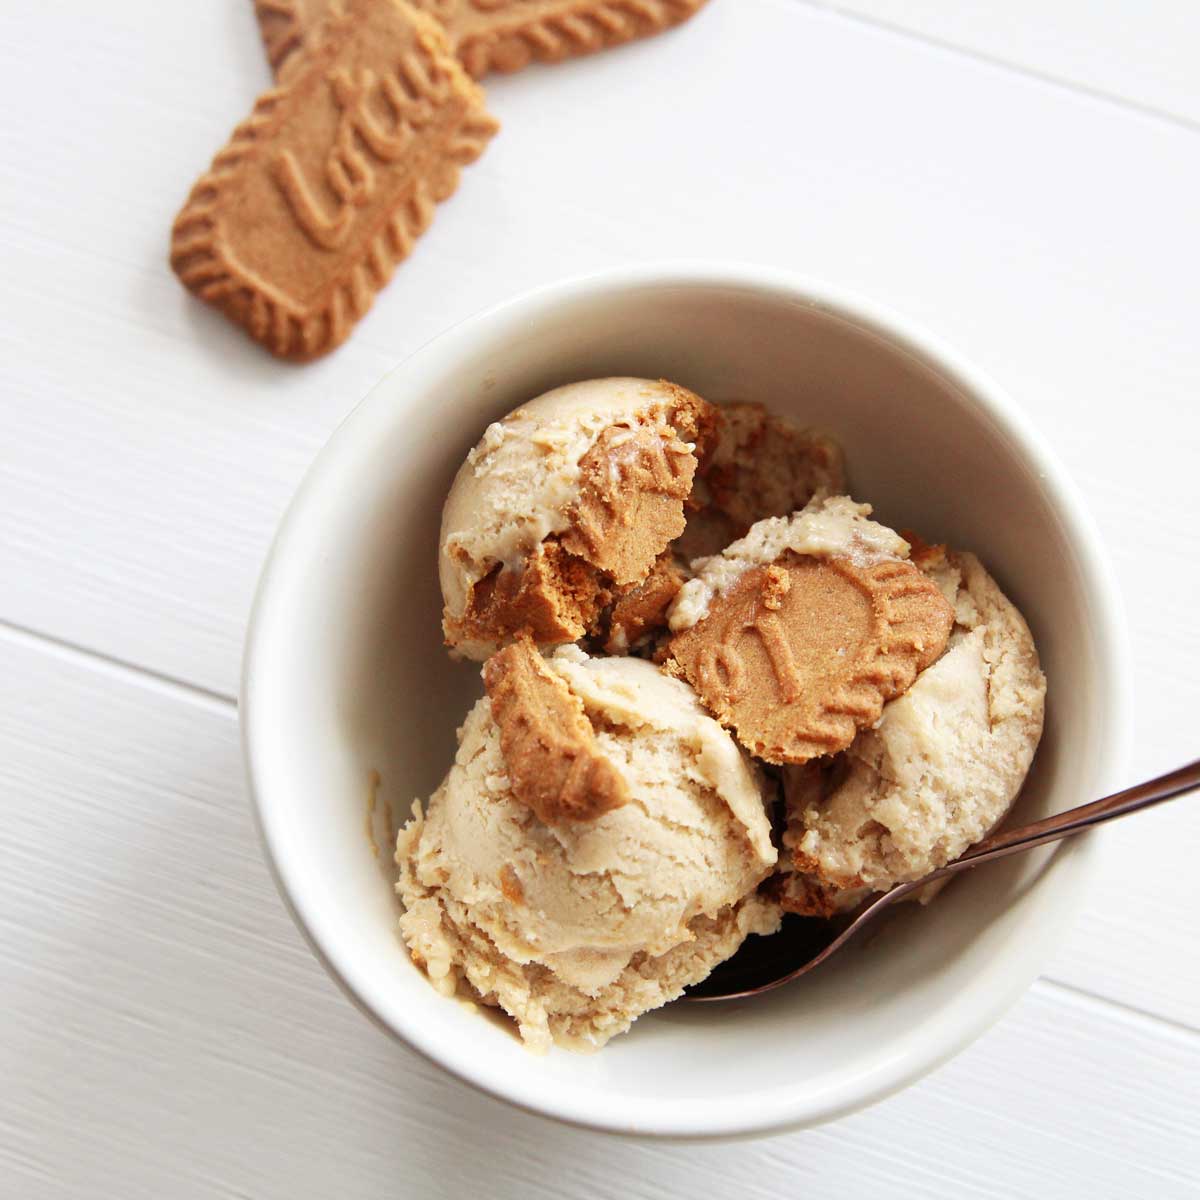 Easy 3-Ingredient Mugwort Ice Cream Recipe - mugwort ice cream